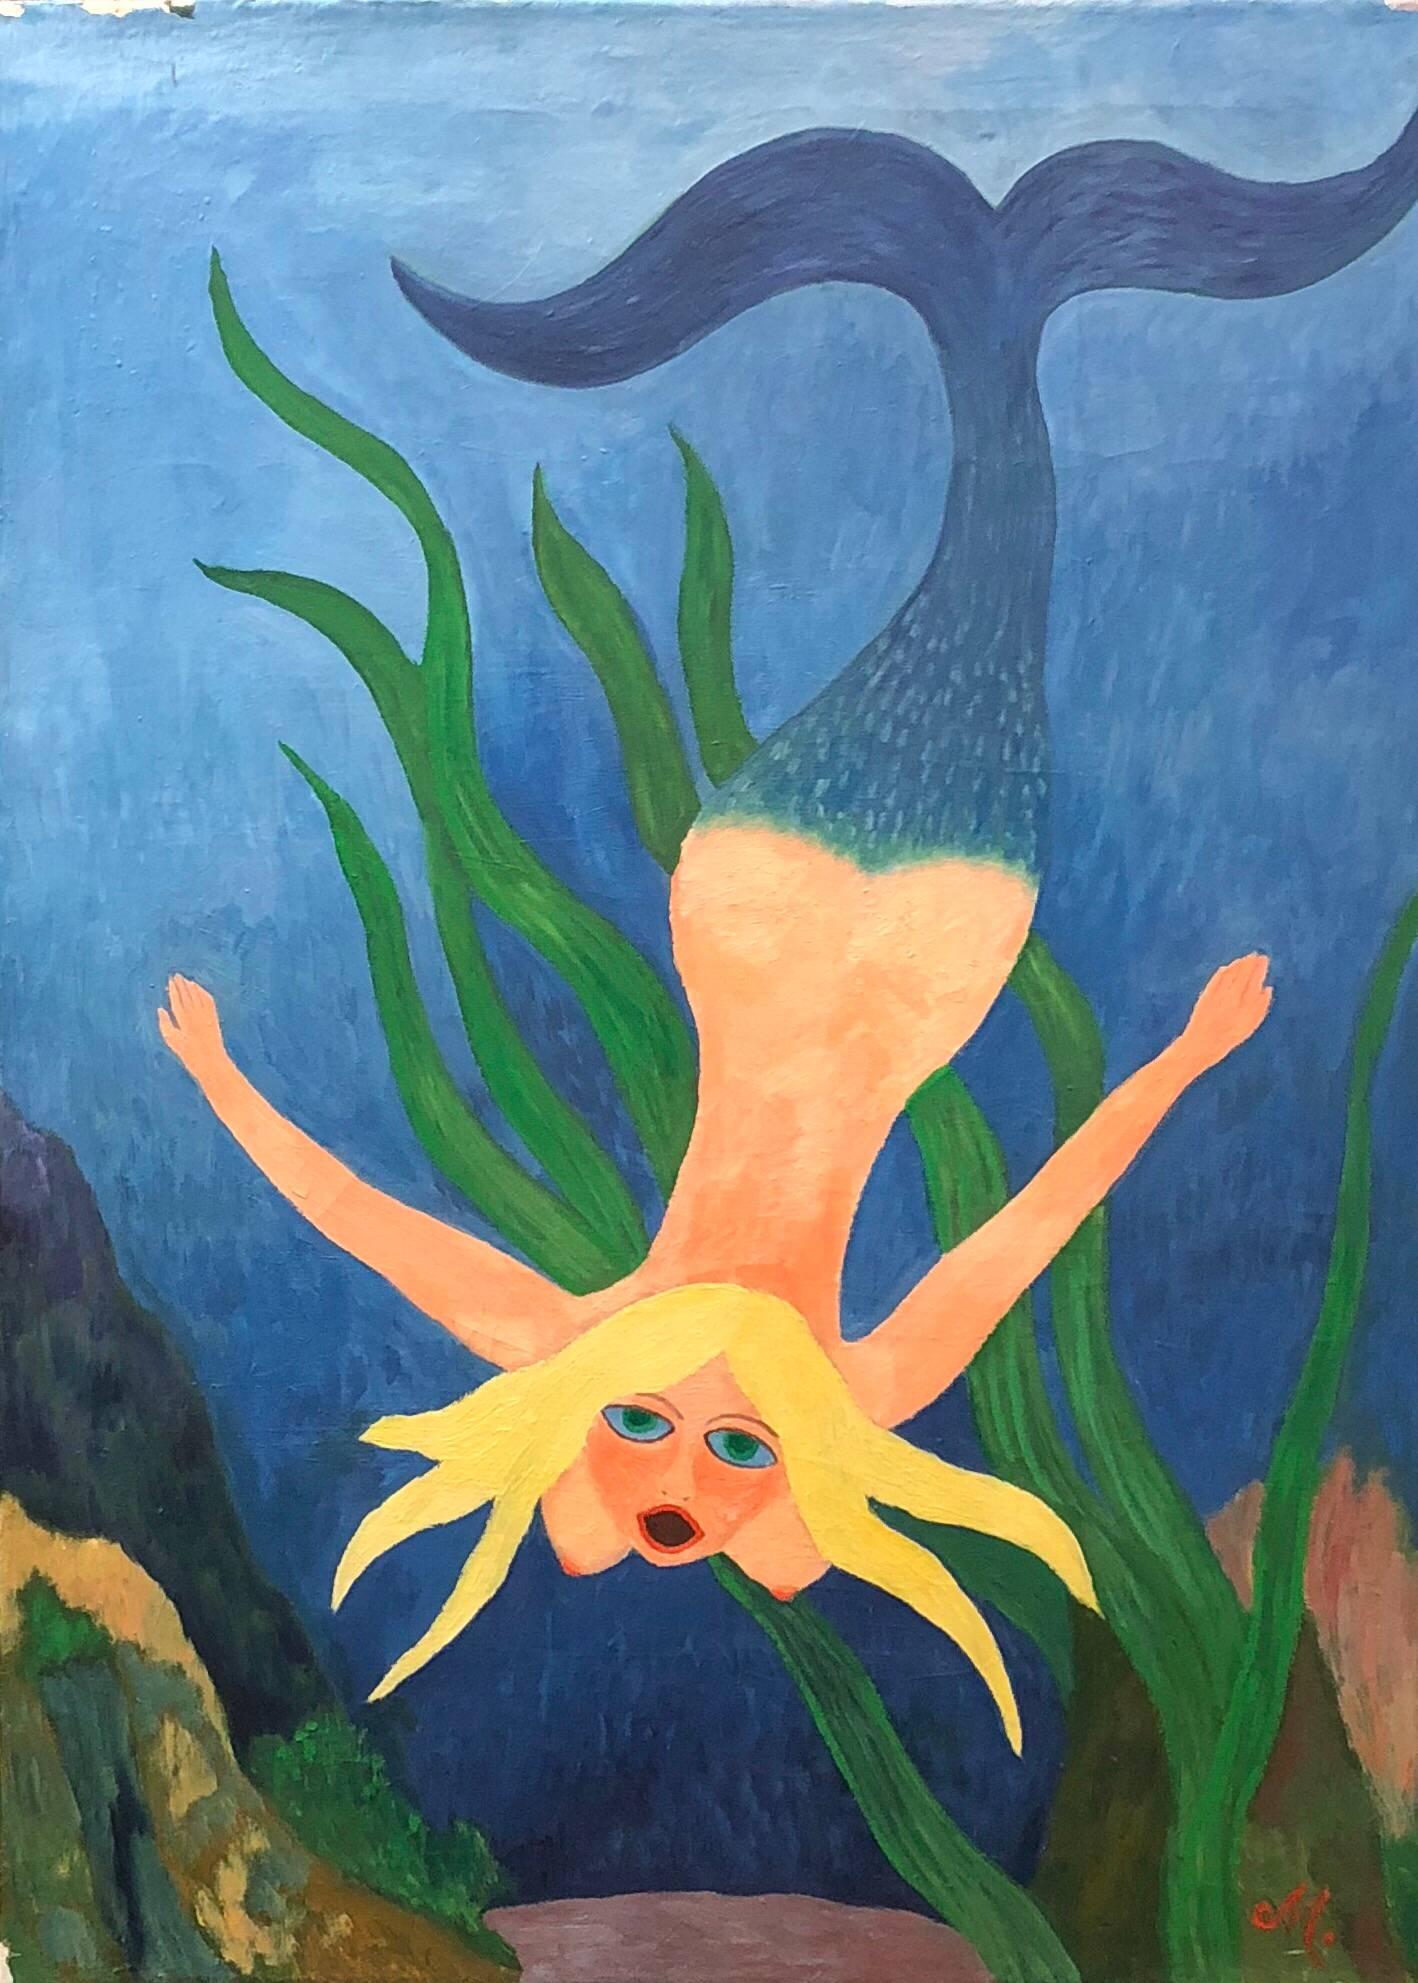 Mermaid nue sous la mer, peinture d'art populaire allemand d'un outsider